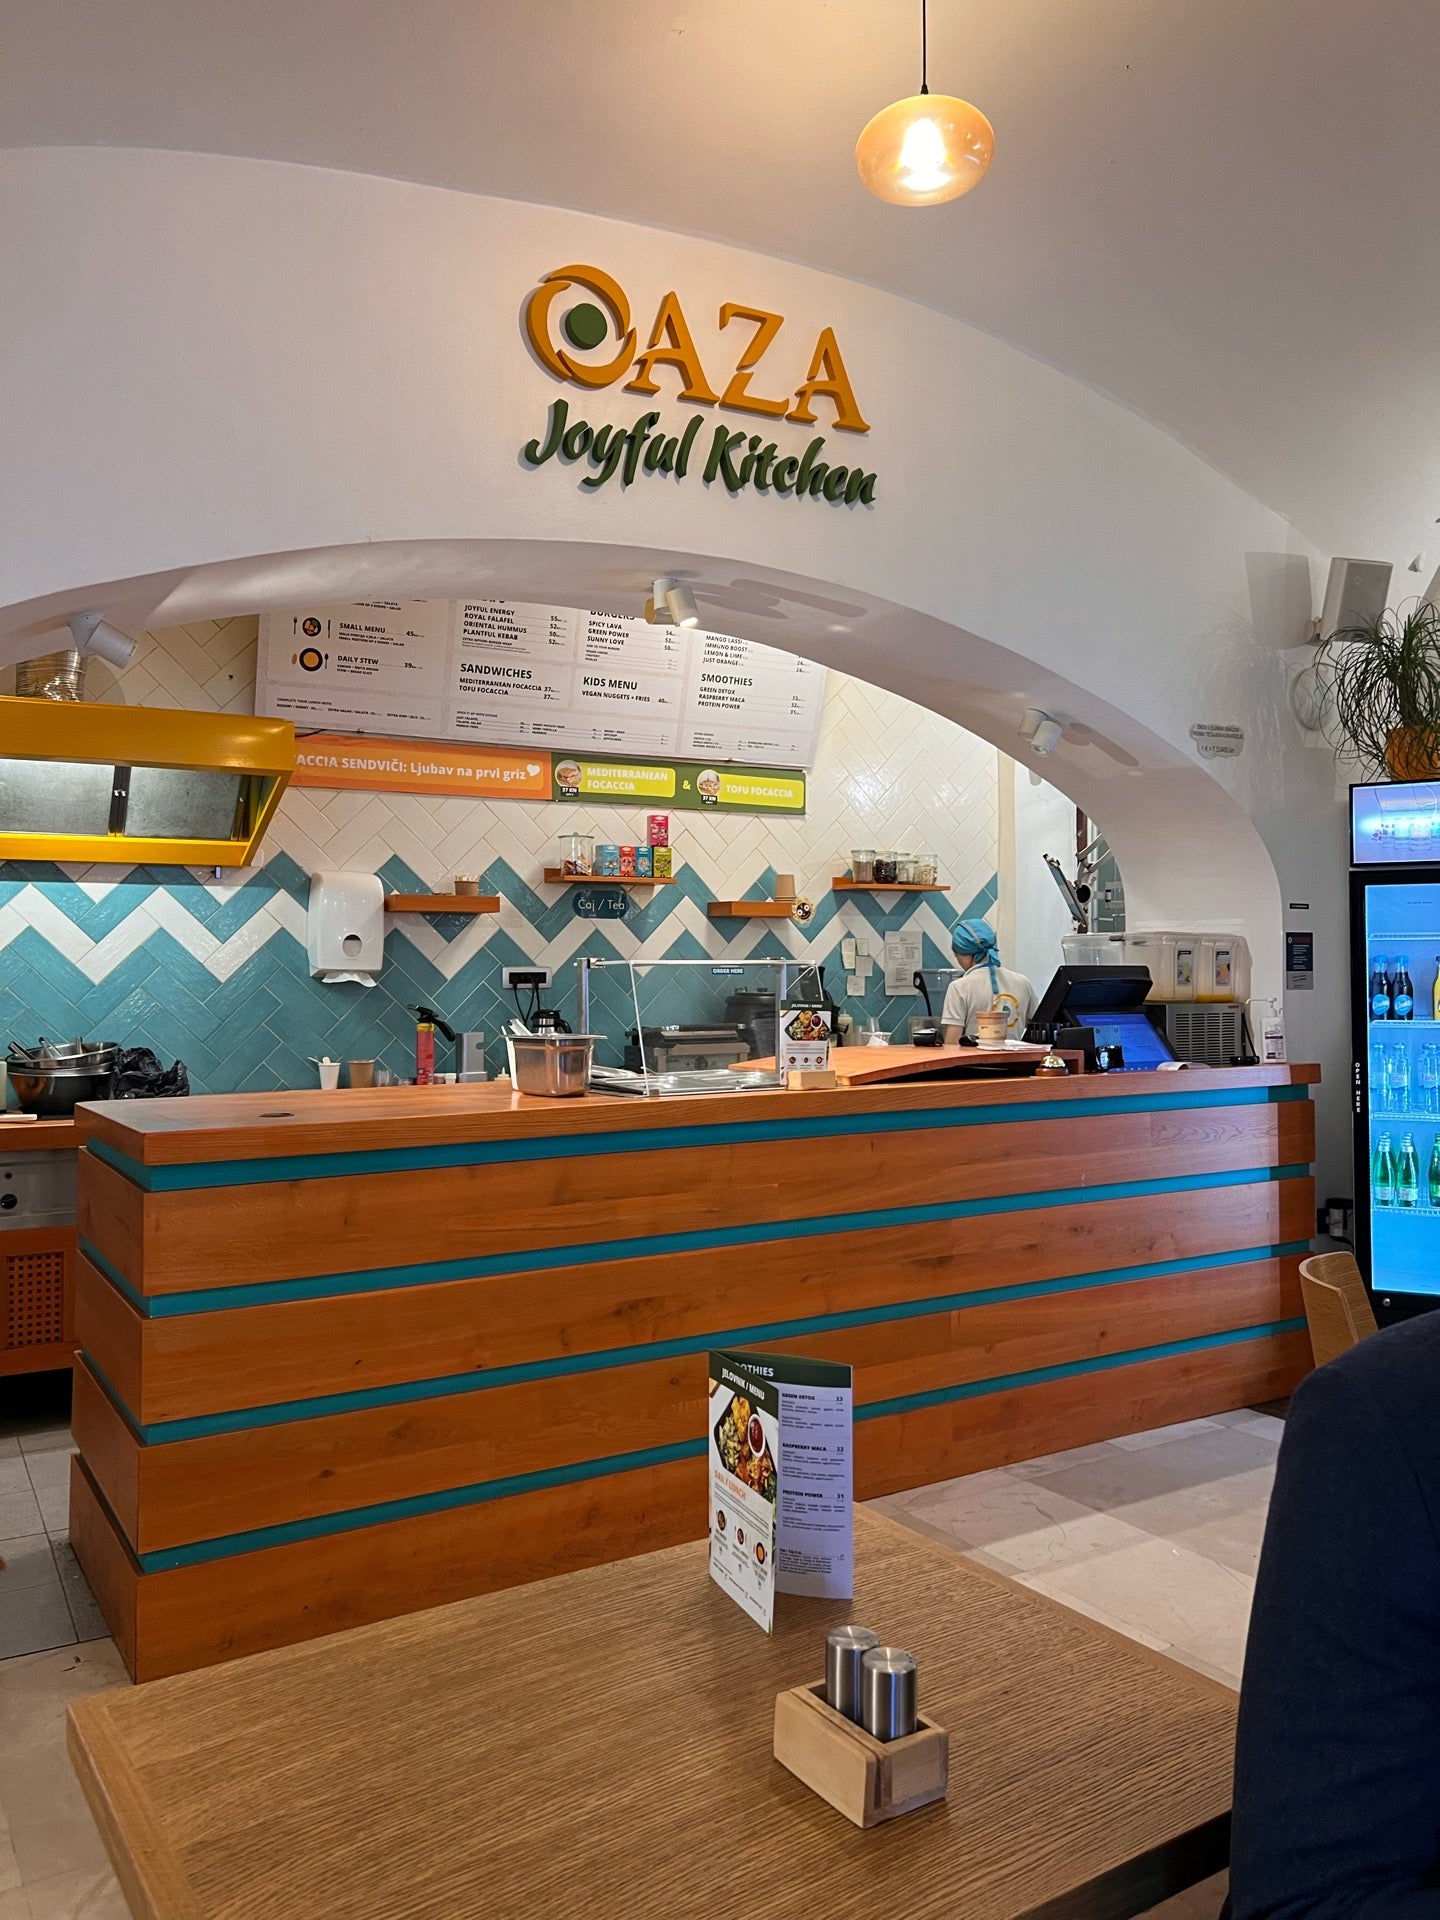 OAZA Joyful Kitchen